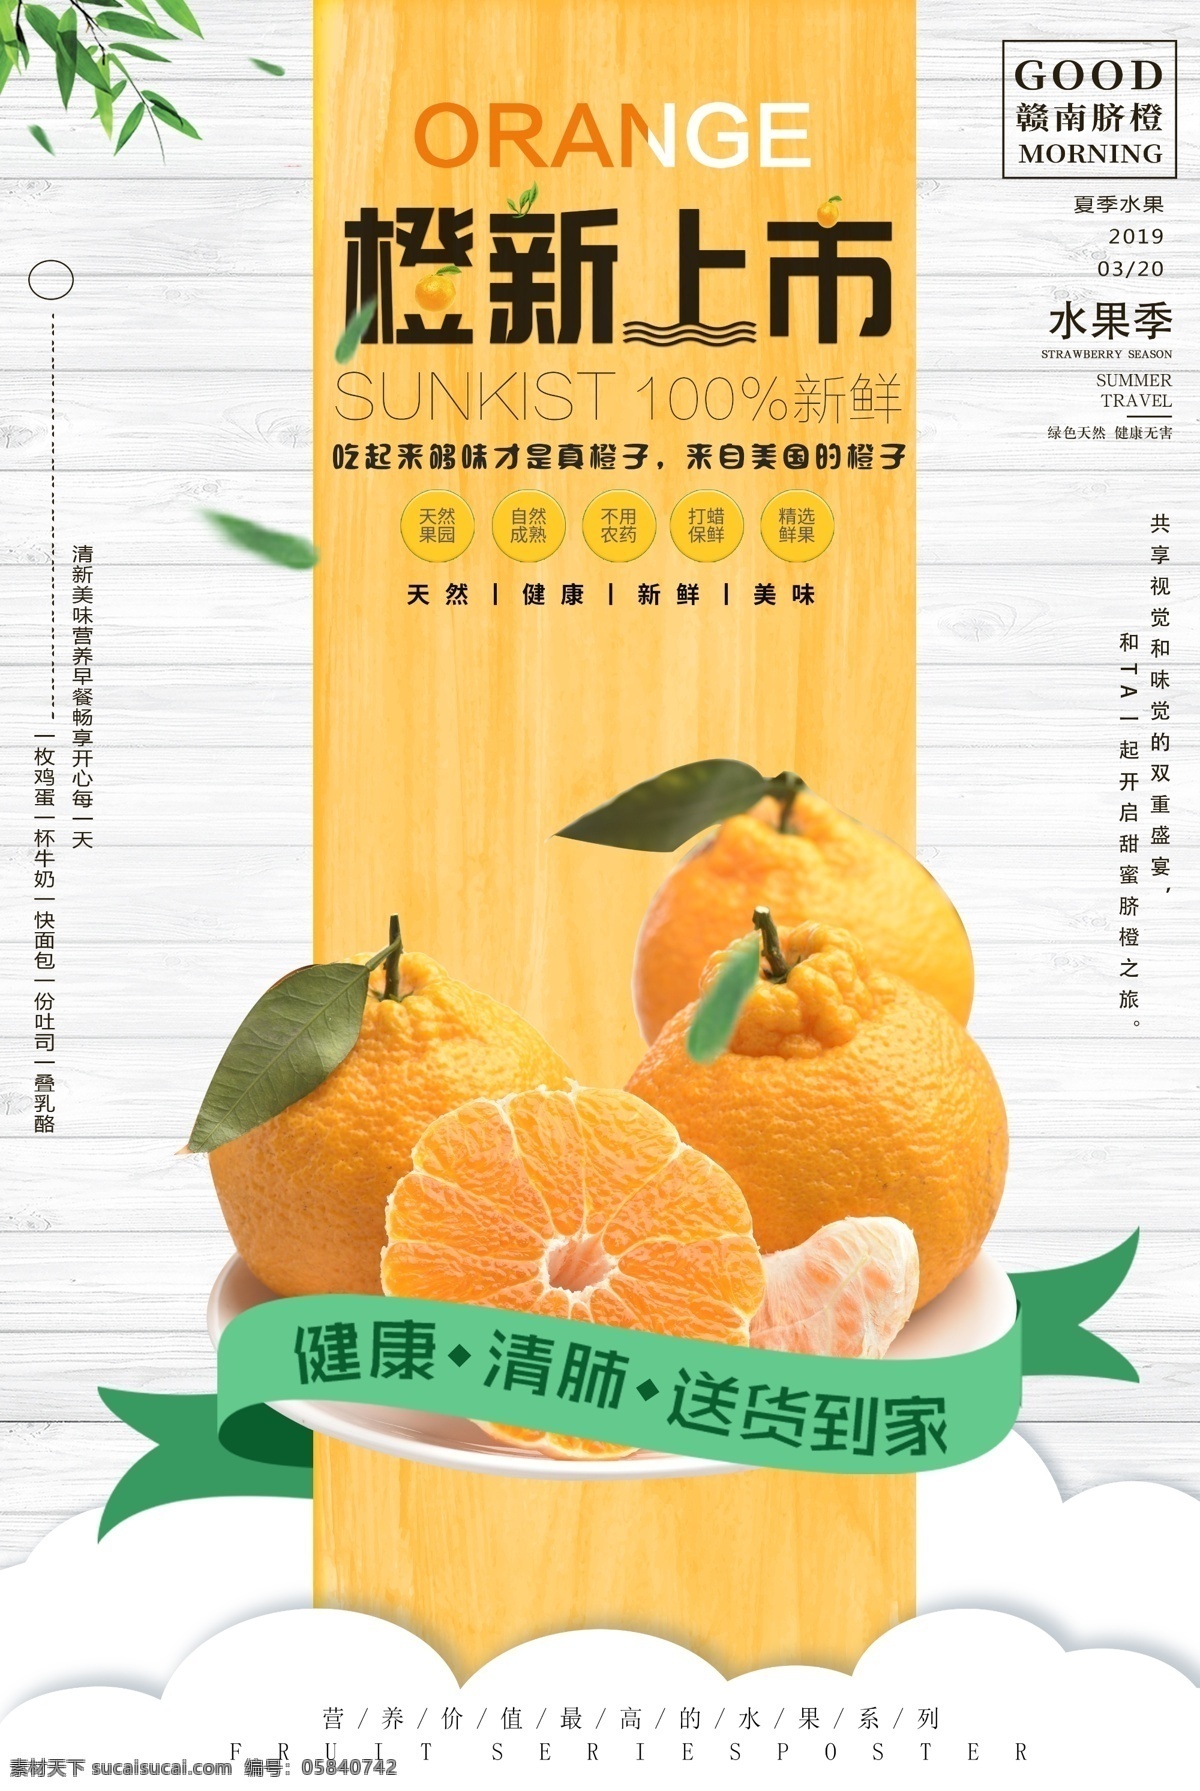 促销 折扣 新鲜 新鲜橙子 橘子水果 水果促销海报 秋冬 特惠 美味 橙子 水果 海报 鲜橙